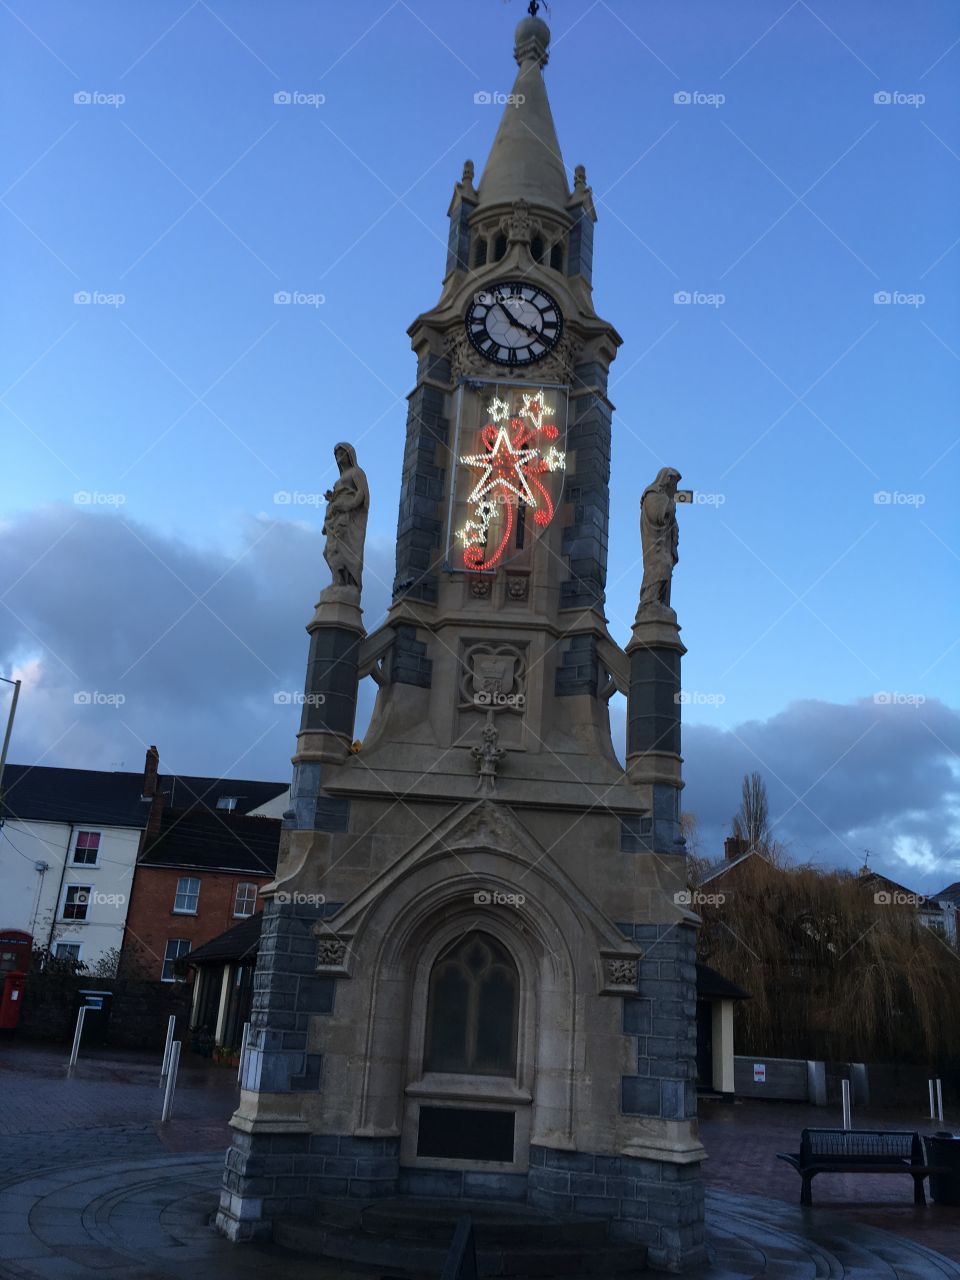 Illuminated clock tower, enhanced by a small Xmas decoration.